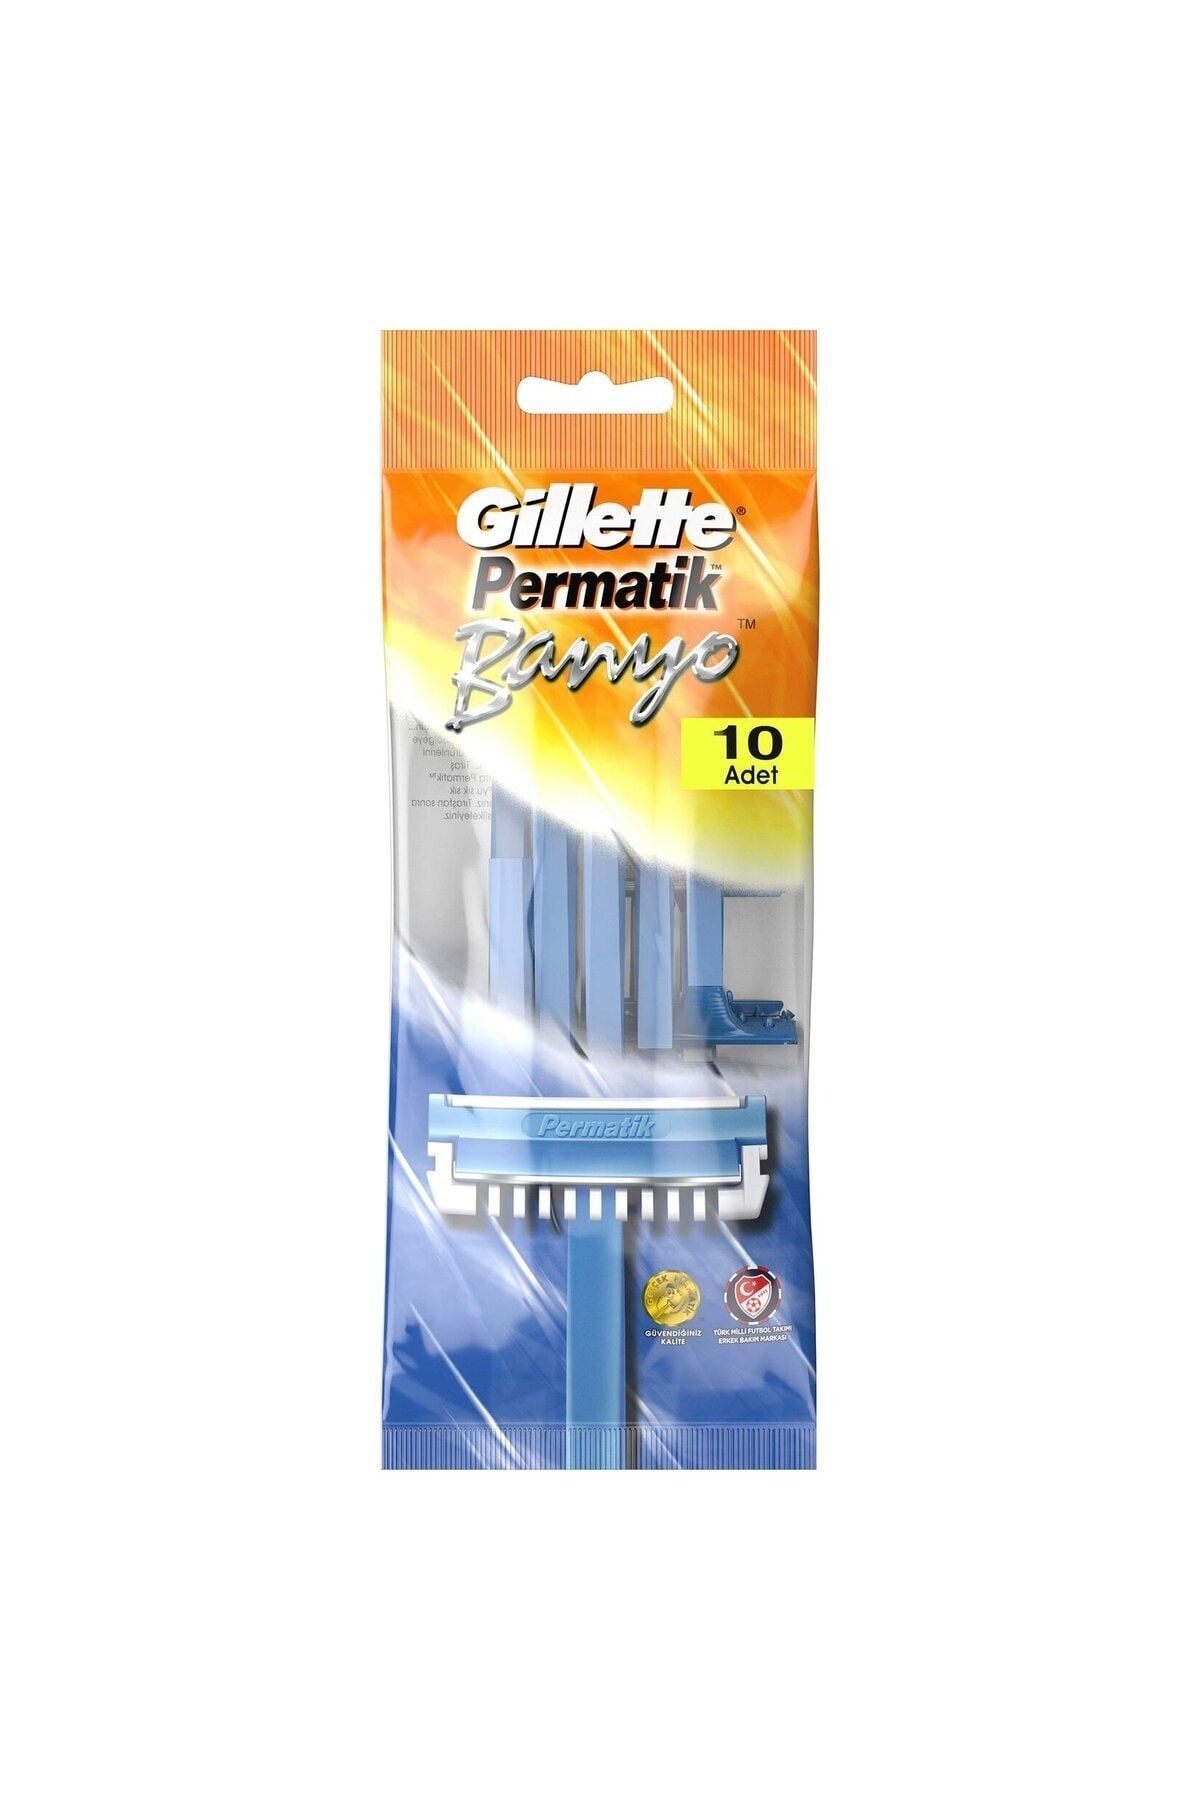 Permatik Gillette Permatik Banyo Kullan At Tıraş Bıçağı 10 Adet